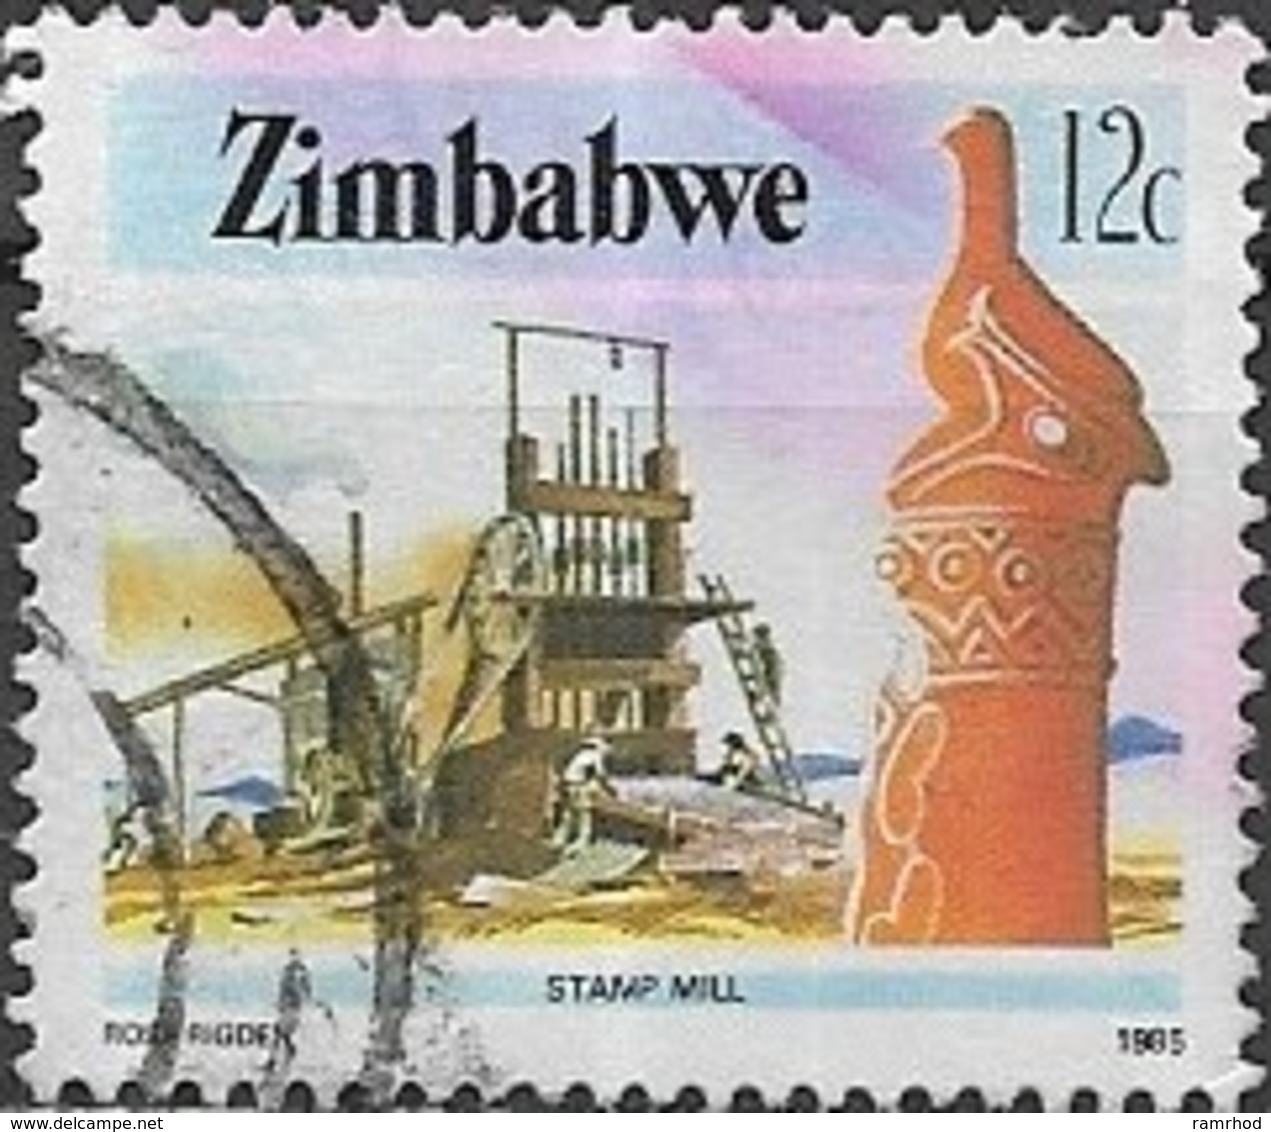 ZIMBABWE 1985 National Infrastructure  -12c. Ore Stamp Mill FU - Zimbabwe (1980-...)